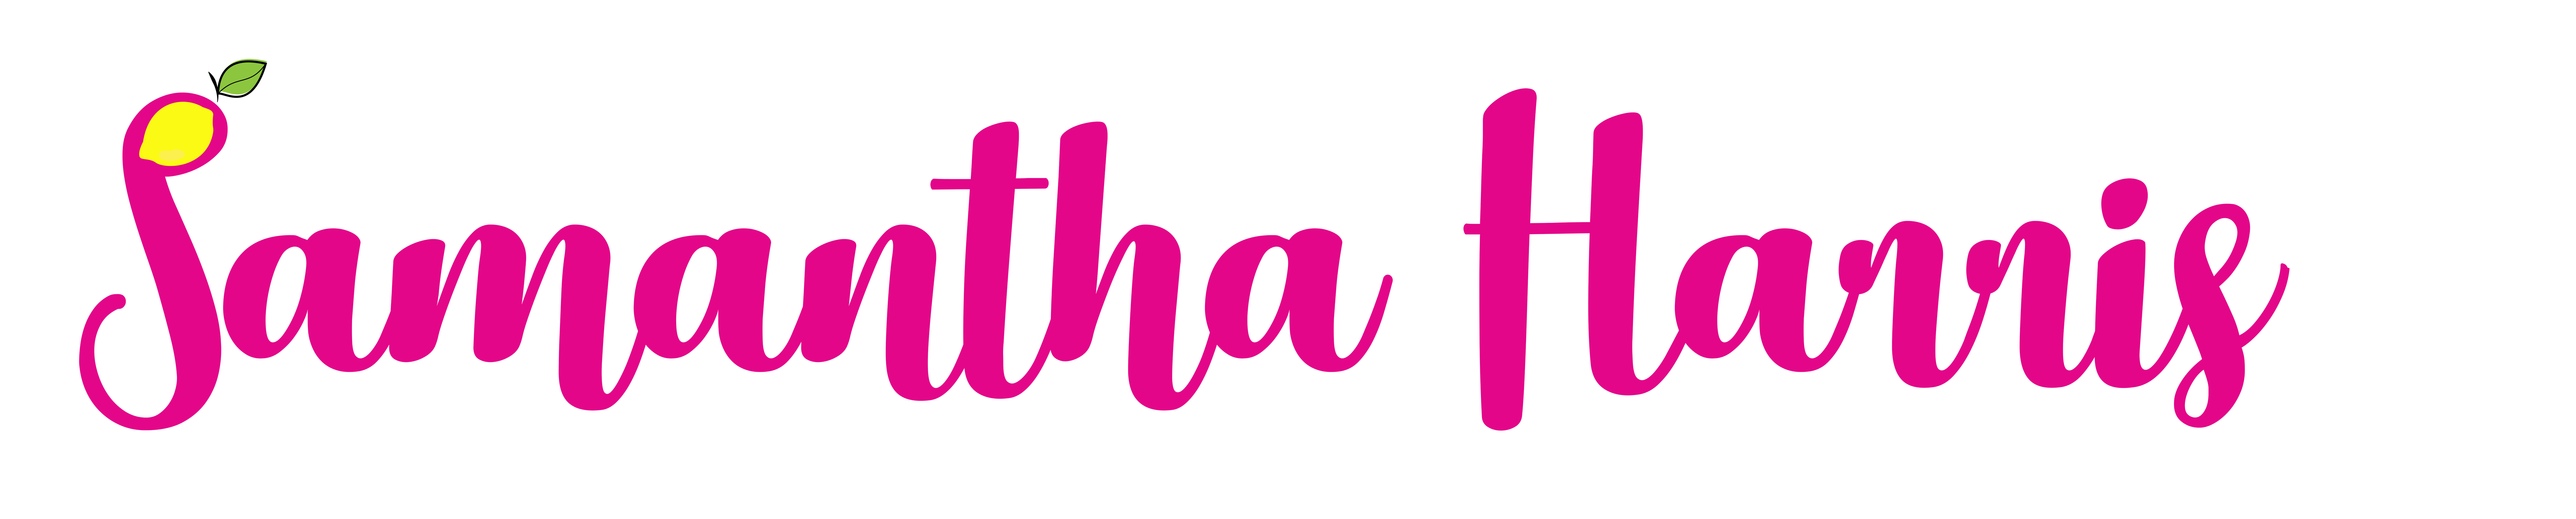 Samantha Harris logo